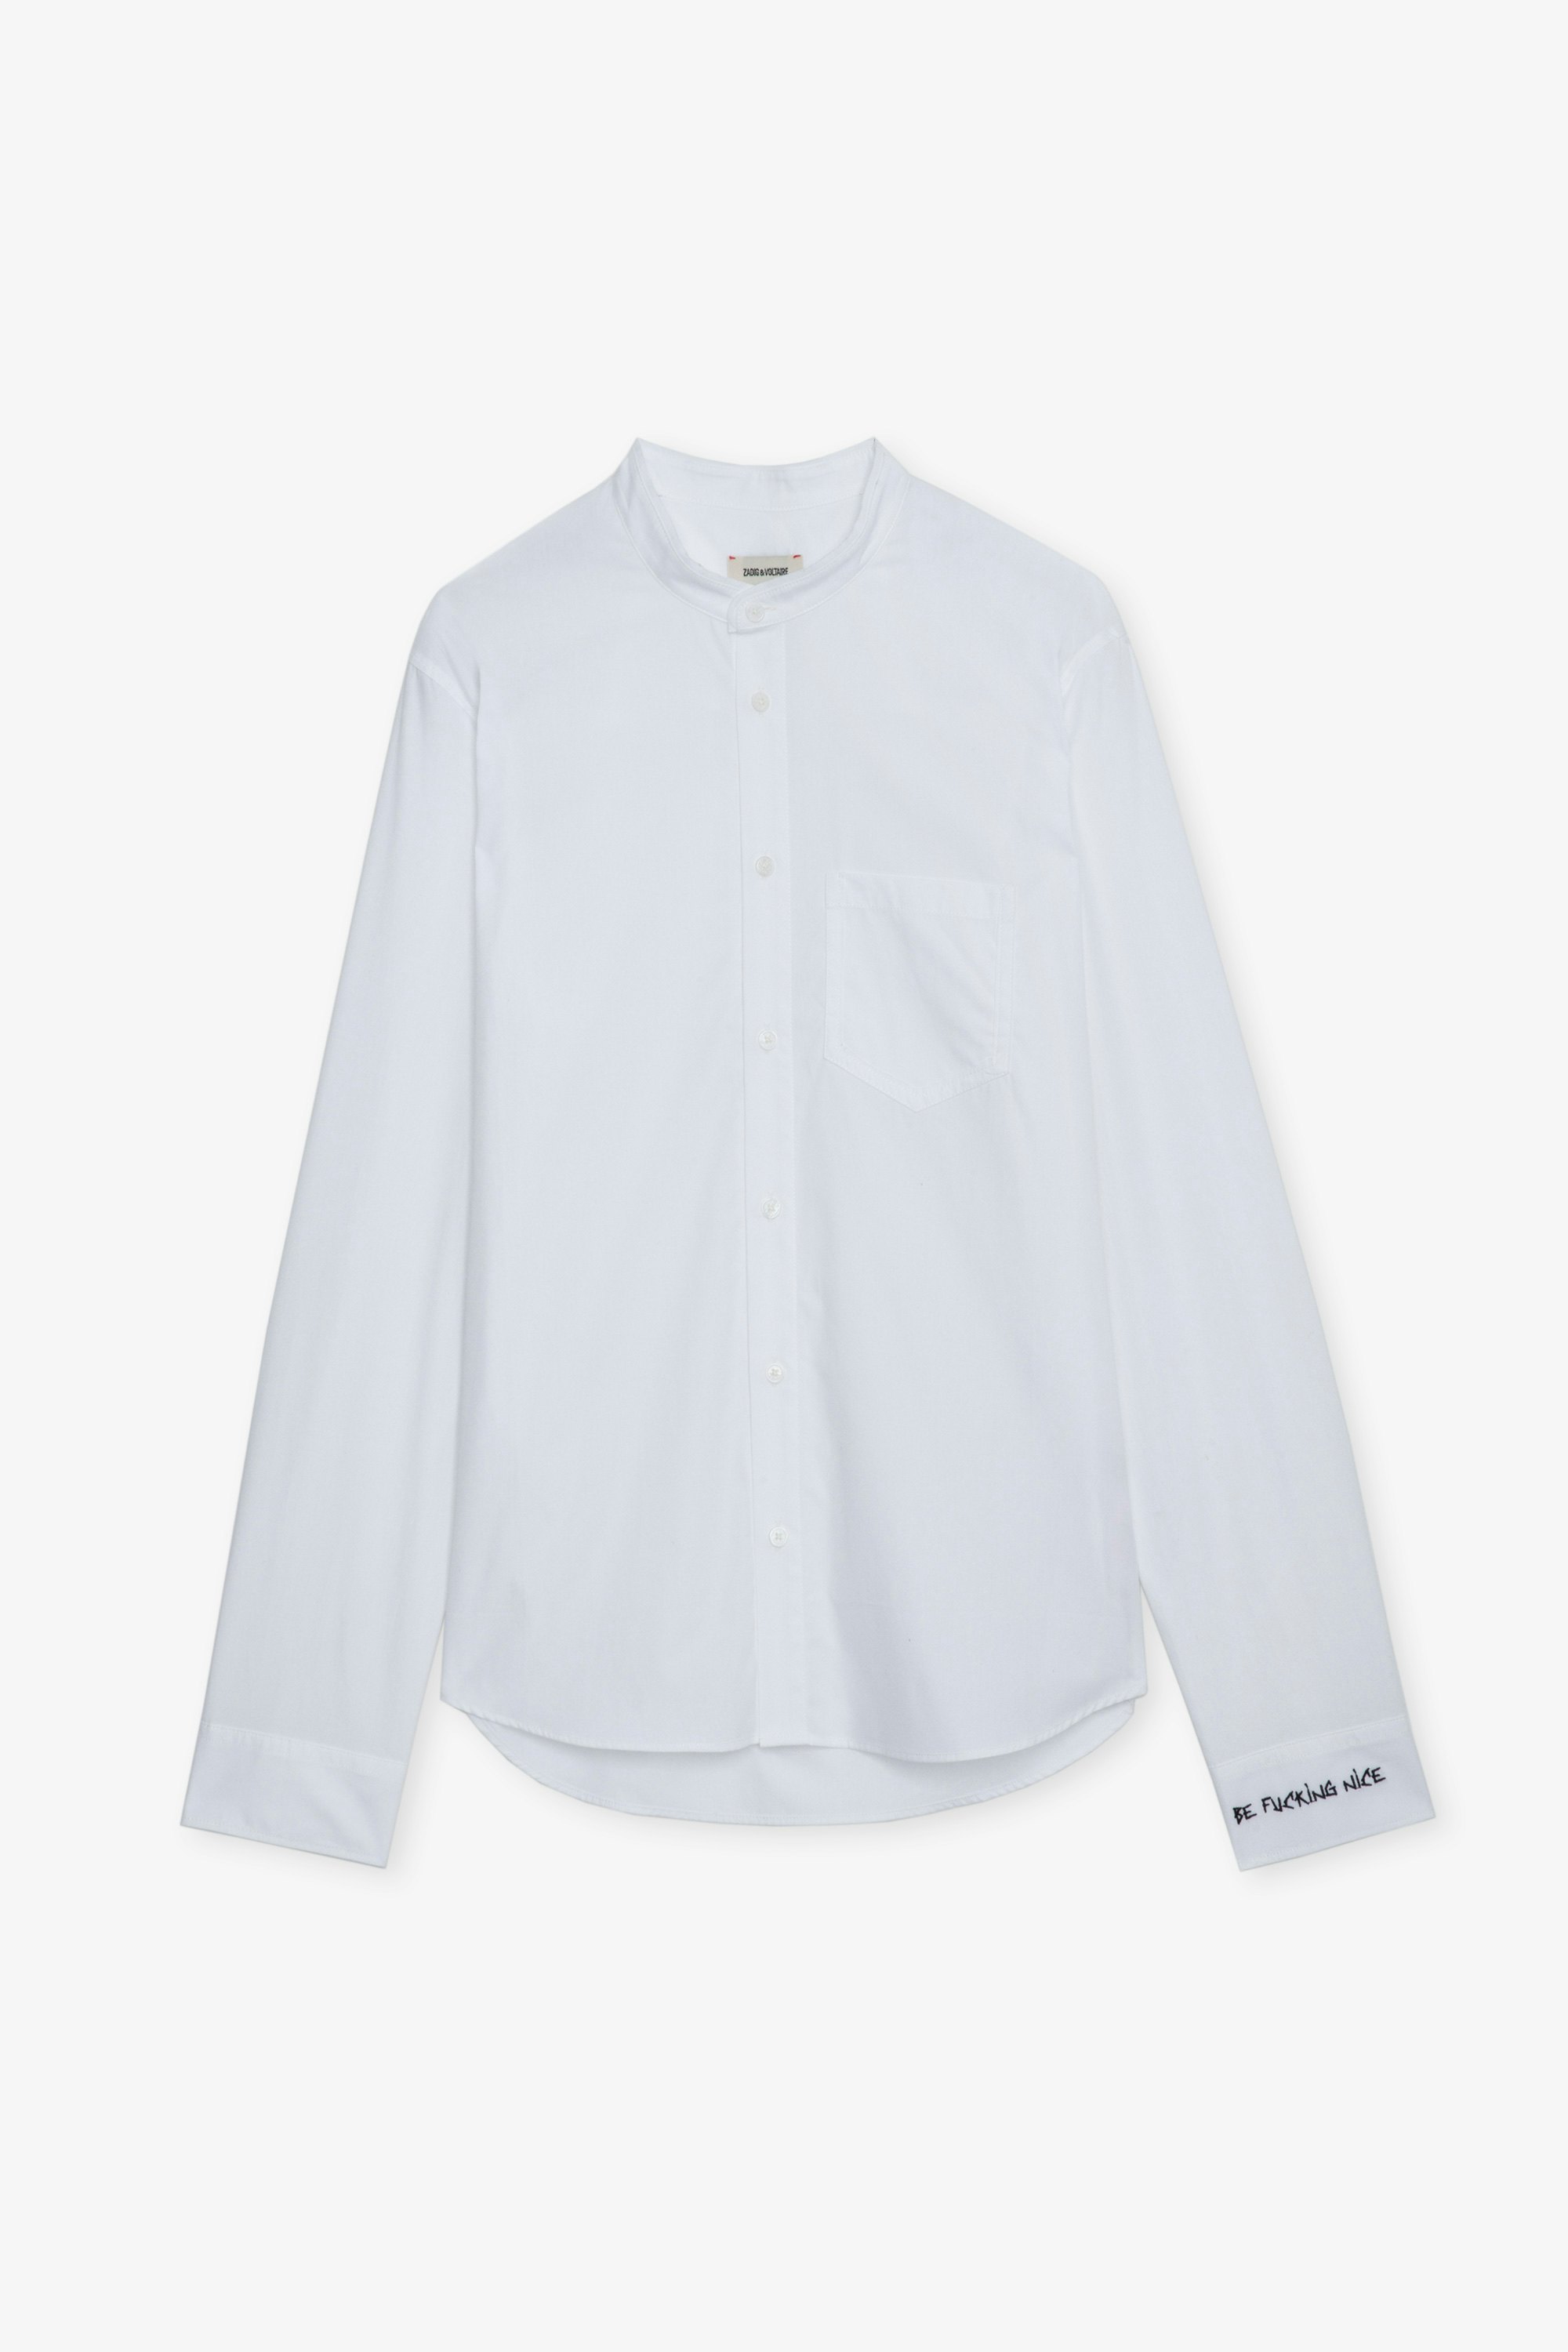 Camisa Sydney - Camisa de popelín de algodón con cuello de oficial, bajo sin rematar y bordados en el puño izquierdo.